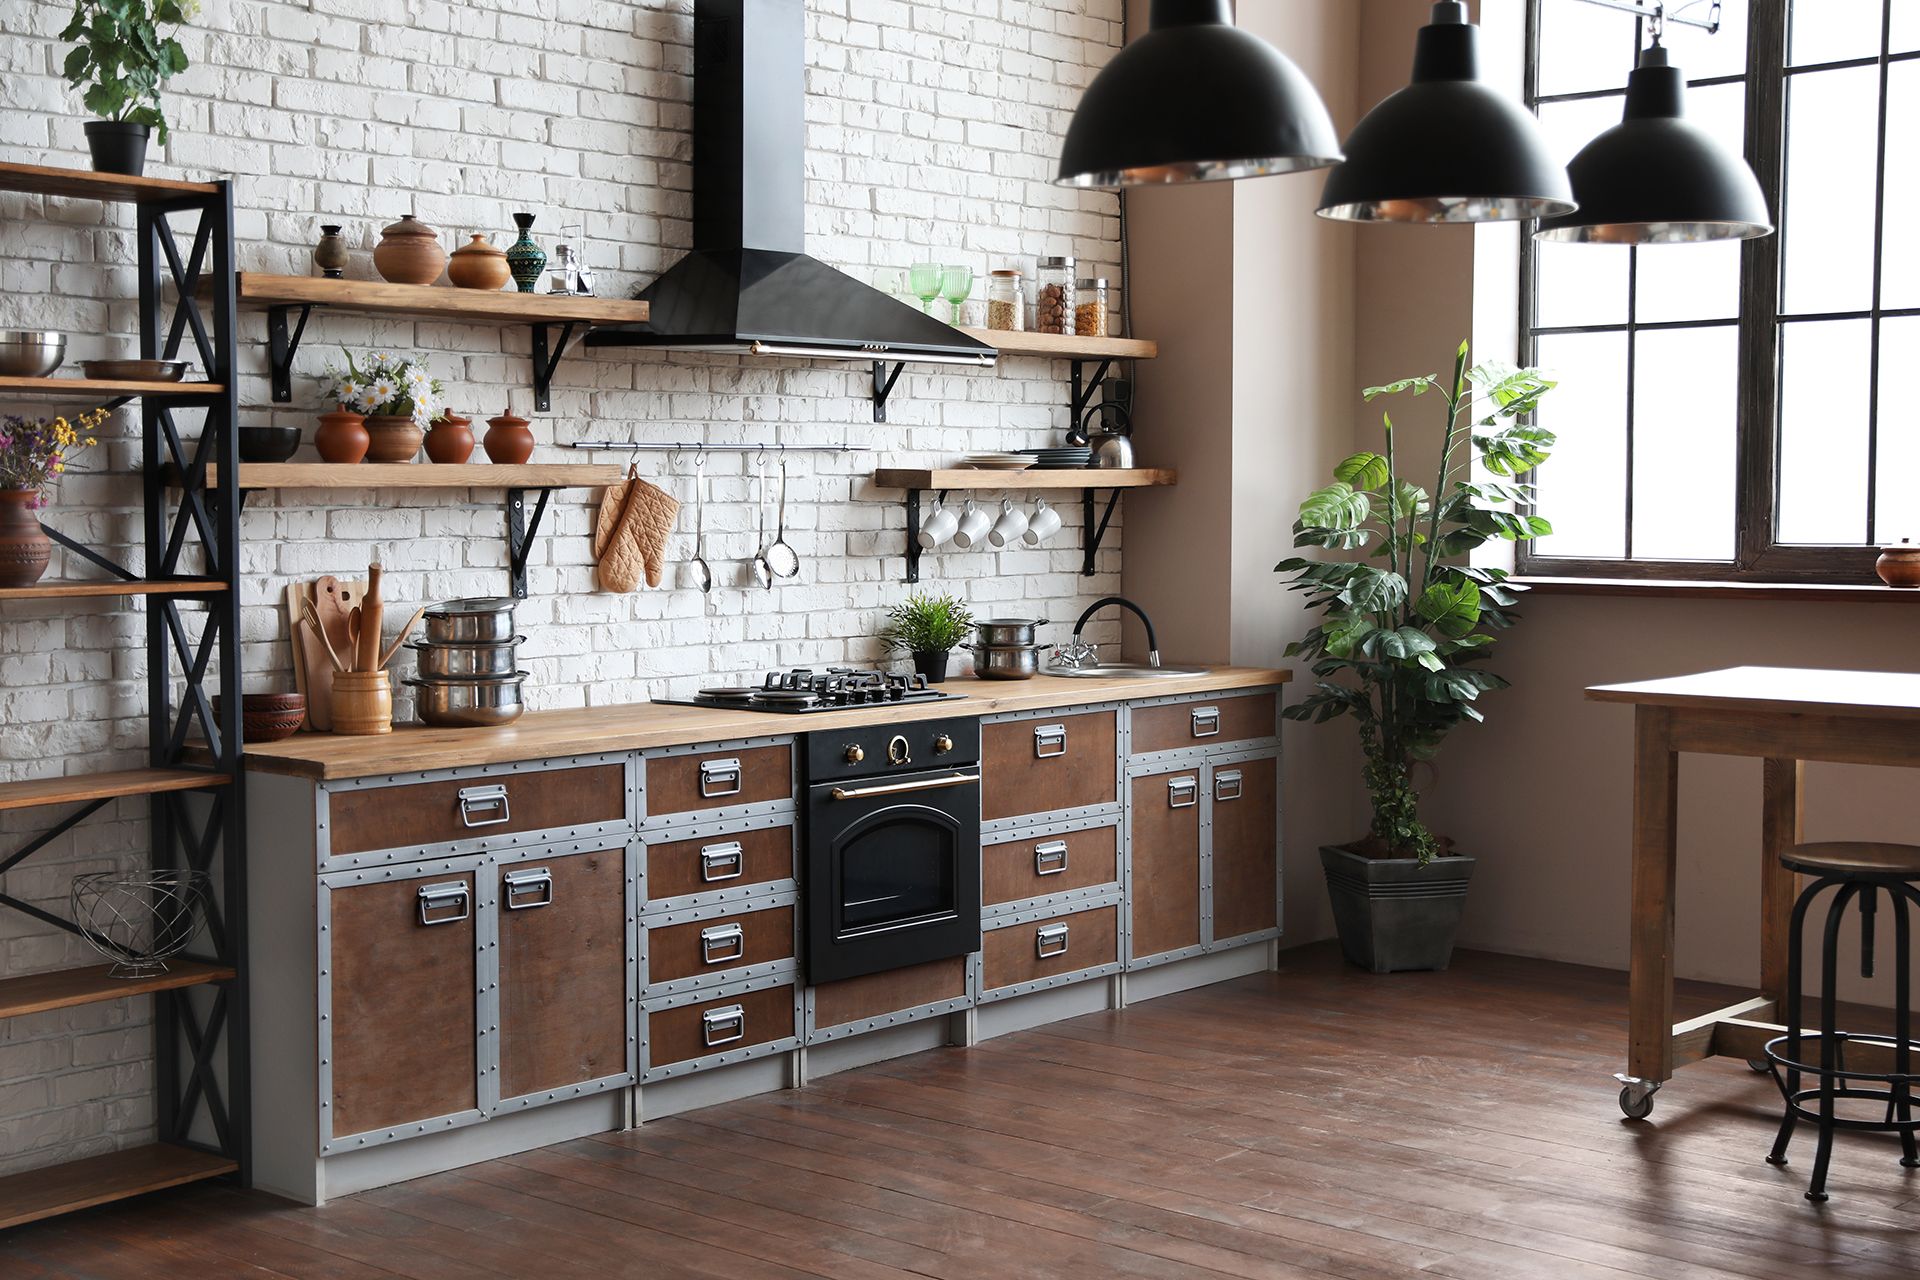 110 красивых примеров дизайна кухни на даче